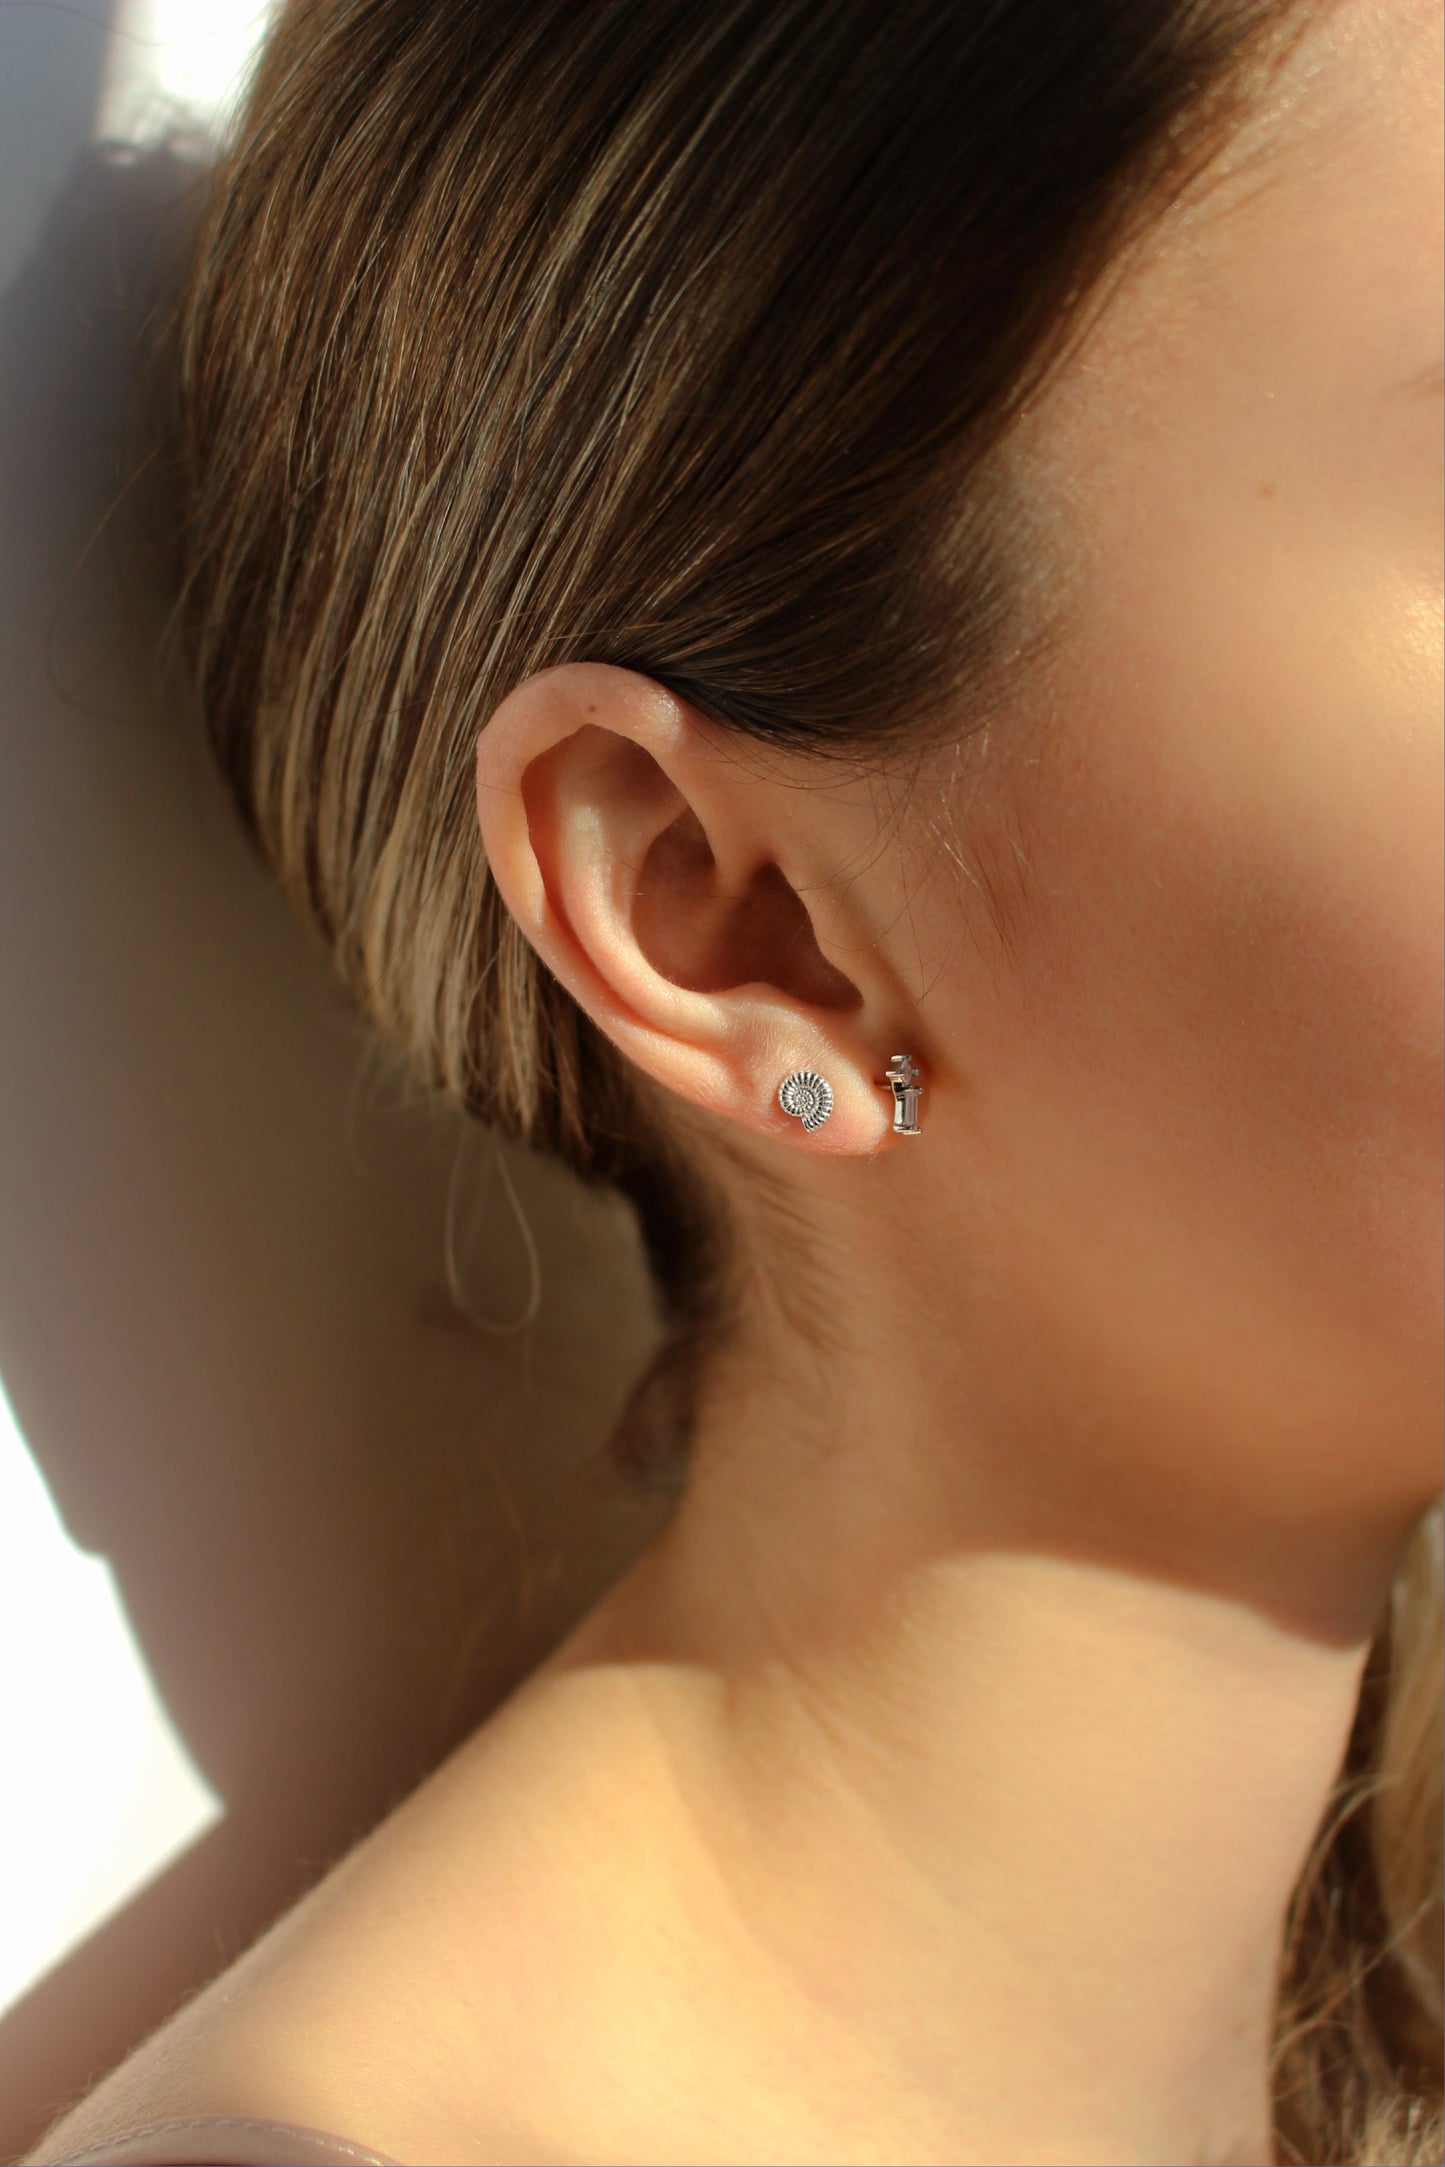 18k Gold Vermeil ∙ Ammonite Shell Stud Earrings ∙ Waterproof ∙ Tiny Spiral Shell Earrings ∙ Minimalist Silver Earrings ∙ Sea Ocean Theme